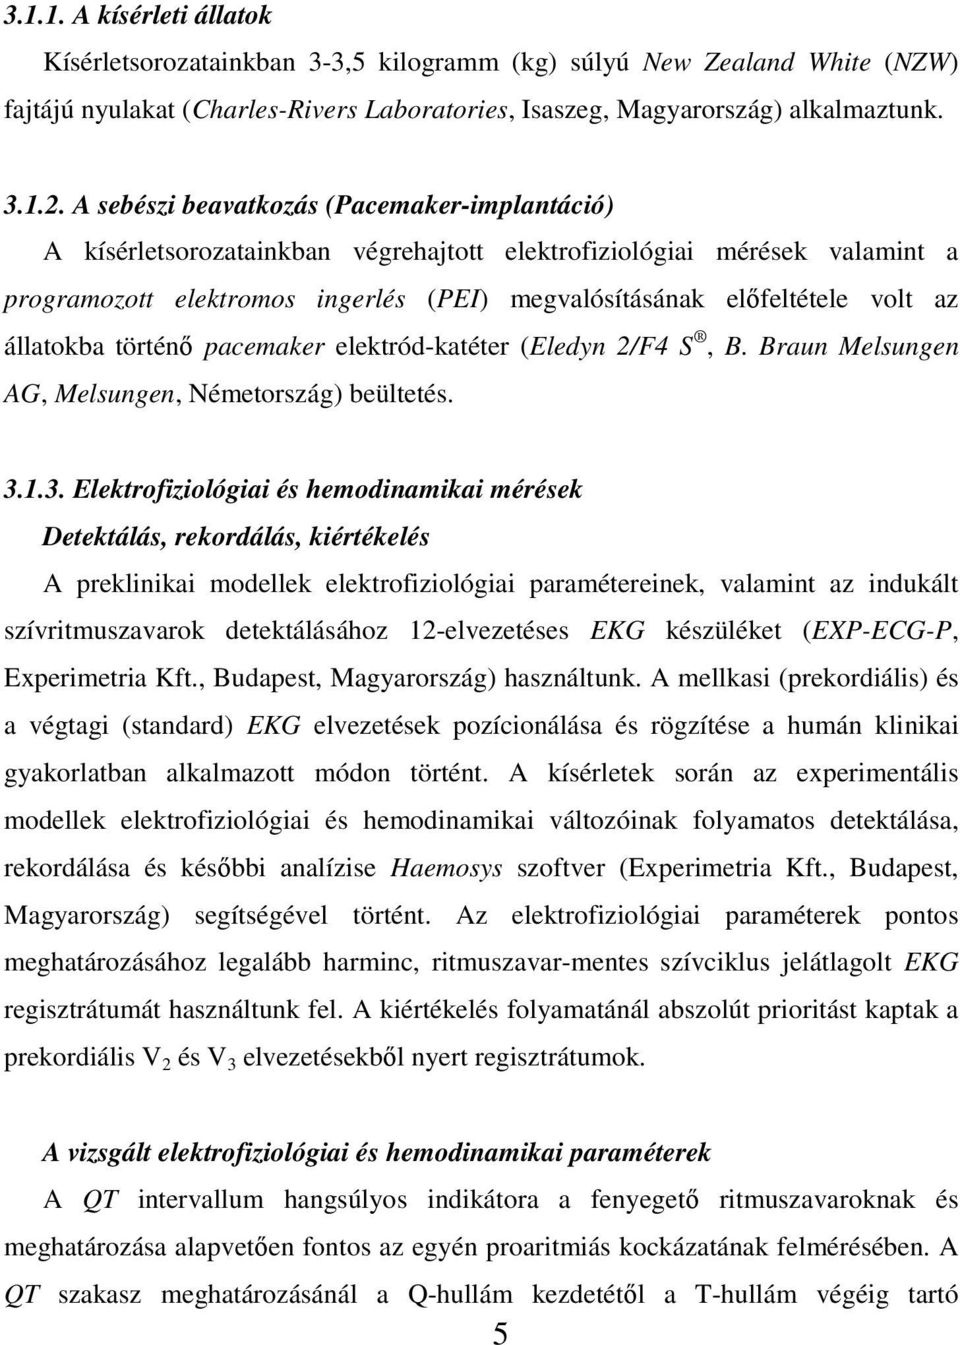 állatokba történő pacemaker elektród-katéter (Eledyn 2/F4 S, B. Braun Melsungen AG, Melsungen, Németország) beültetés. 3.